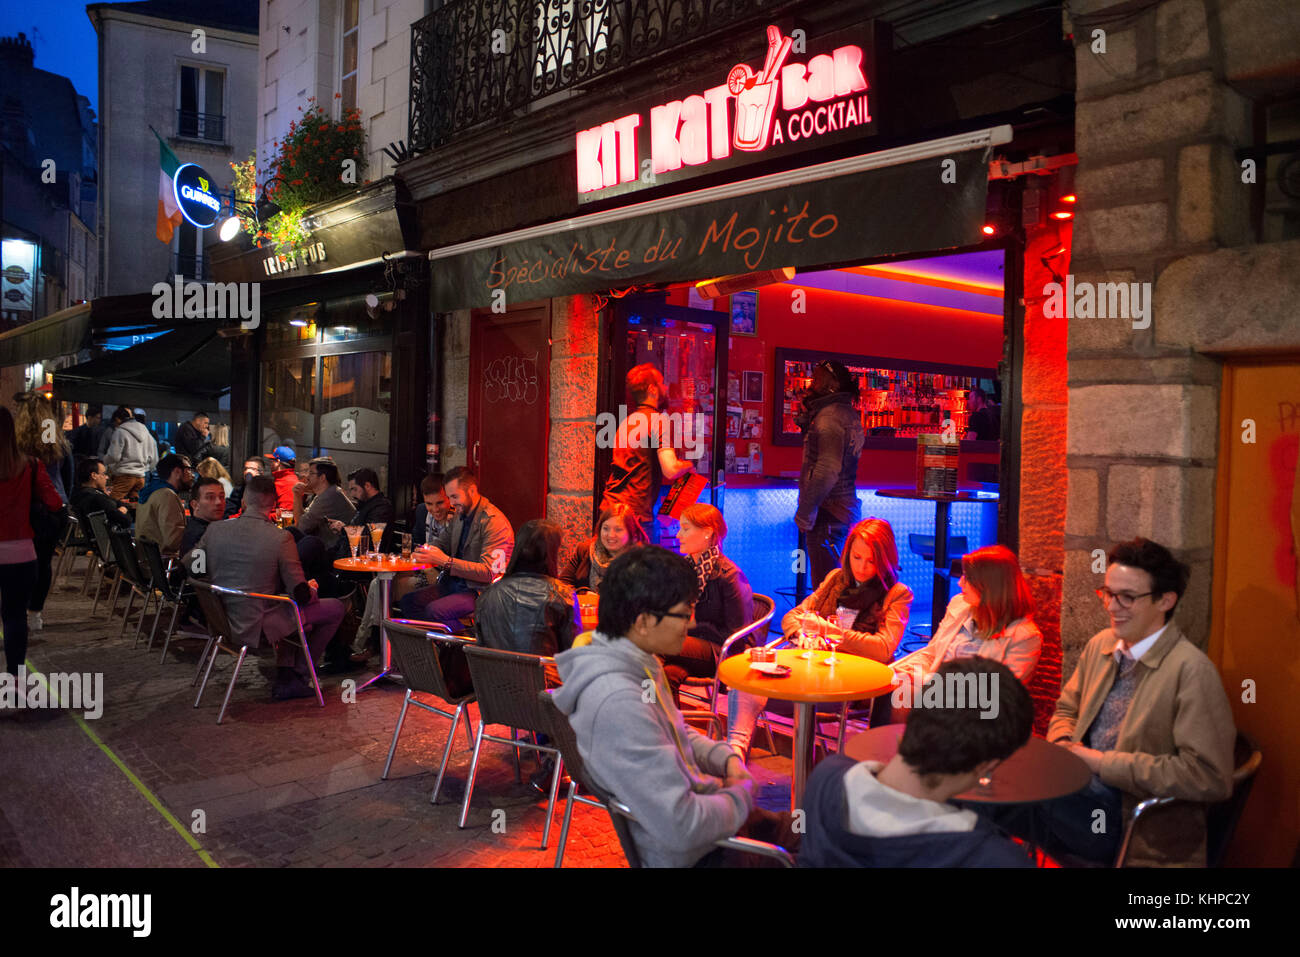 Bares y restaurantes de ambiente nocturno en el casco antiguo de la ciudad de Nantes, Loire Atlantique, Francia. Kit Kat bar y pub. Foto de stock